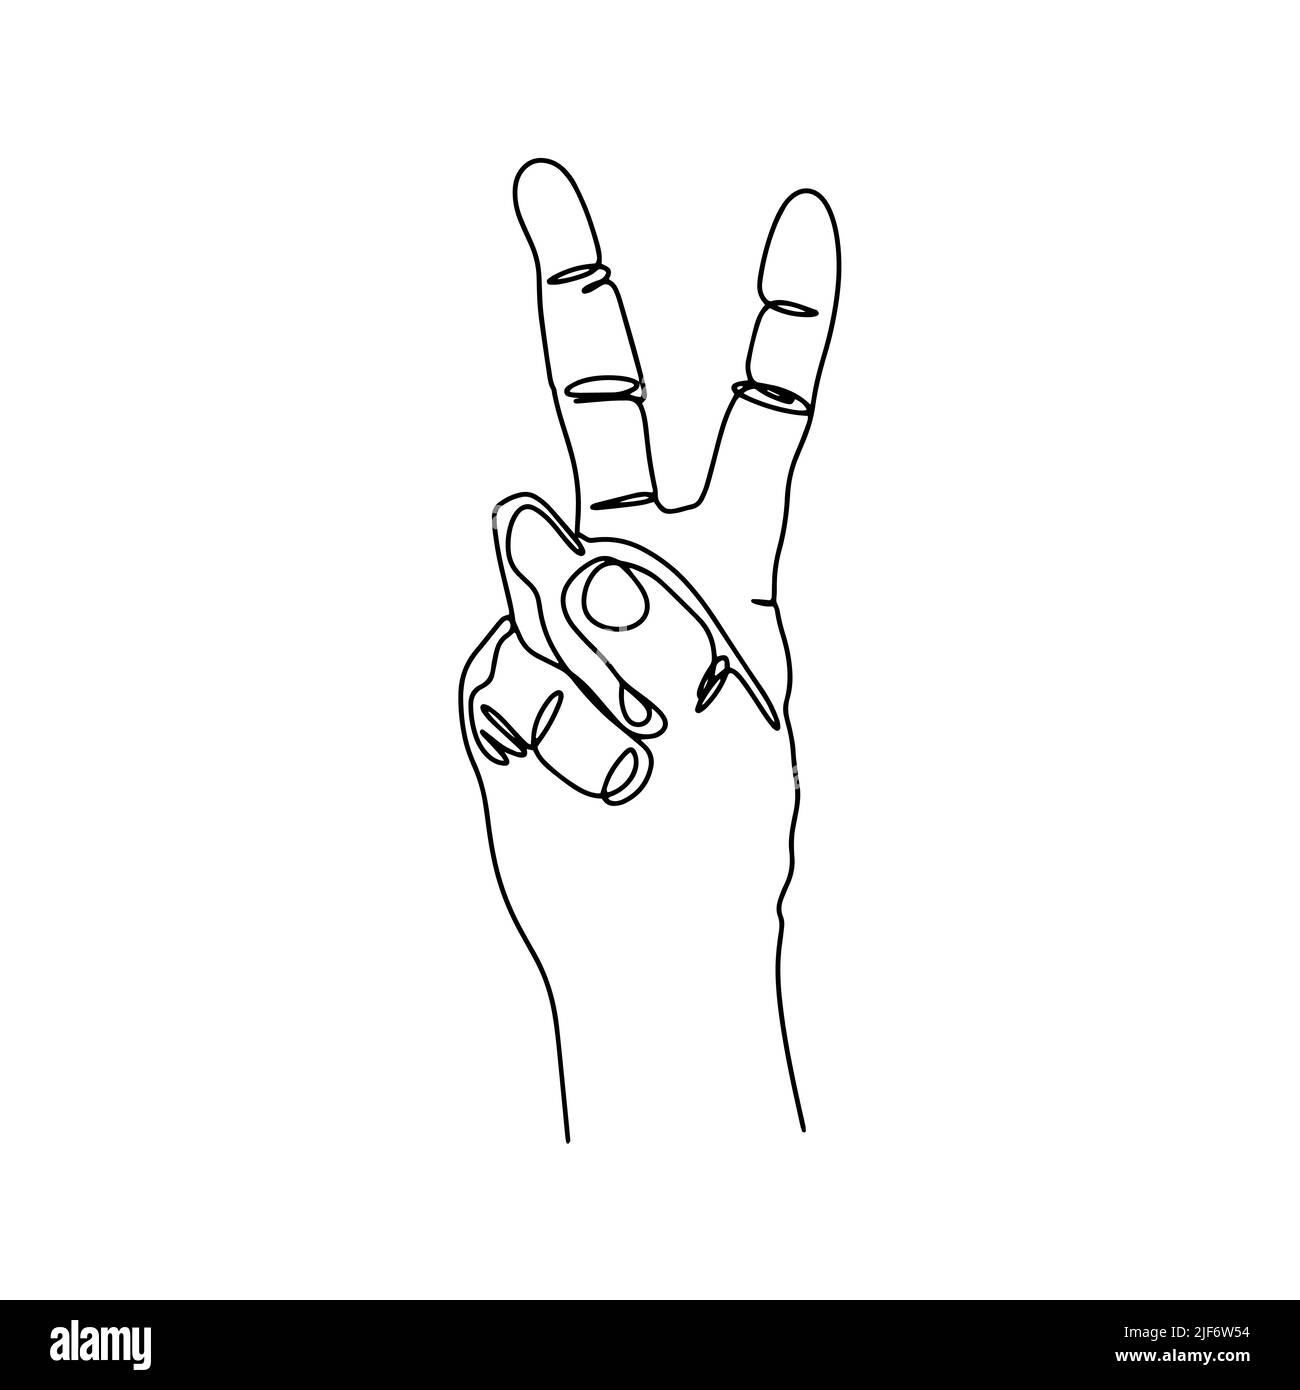 Hand gesture symbol of victory line art vector Stock Vector